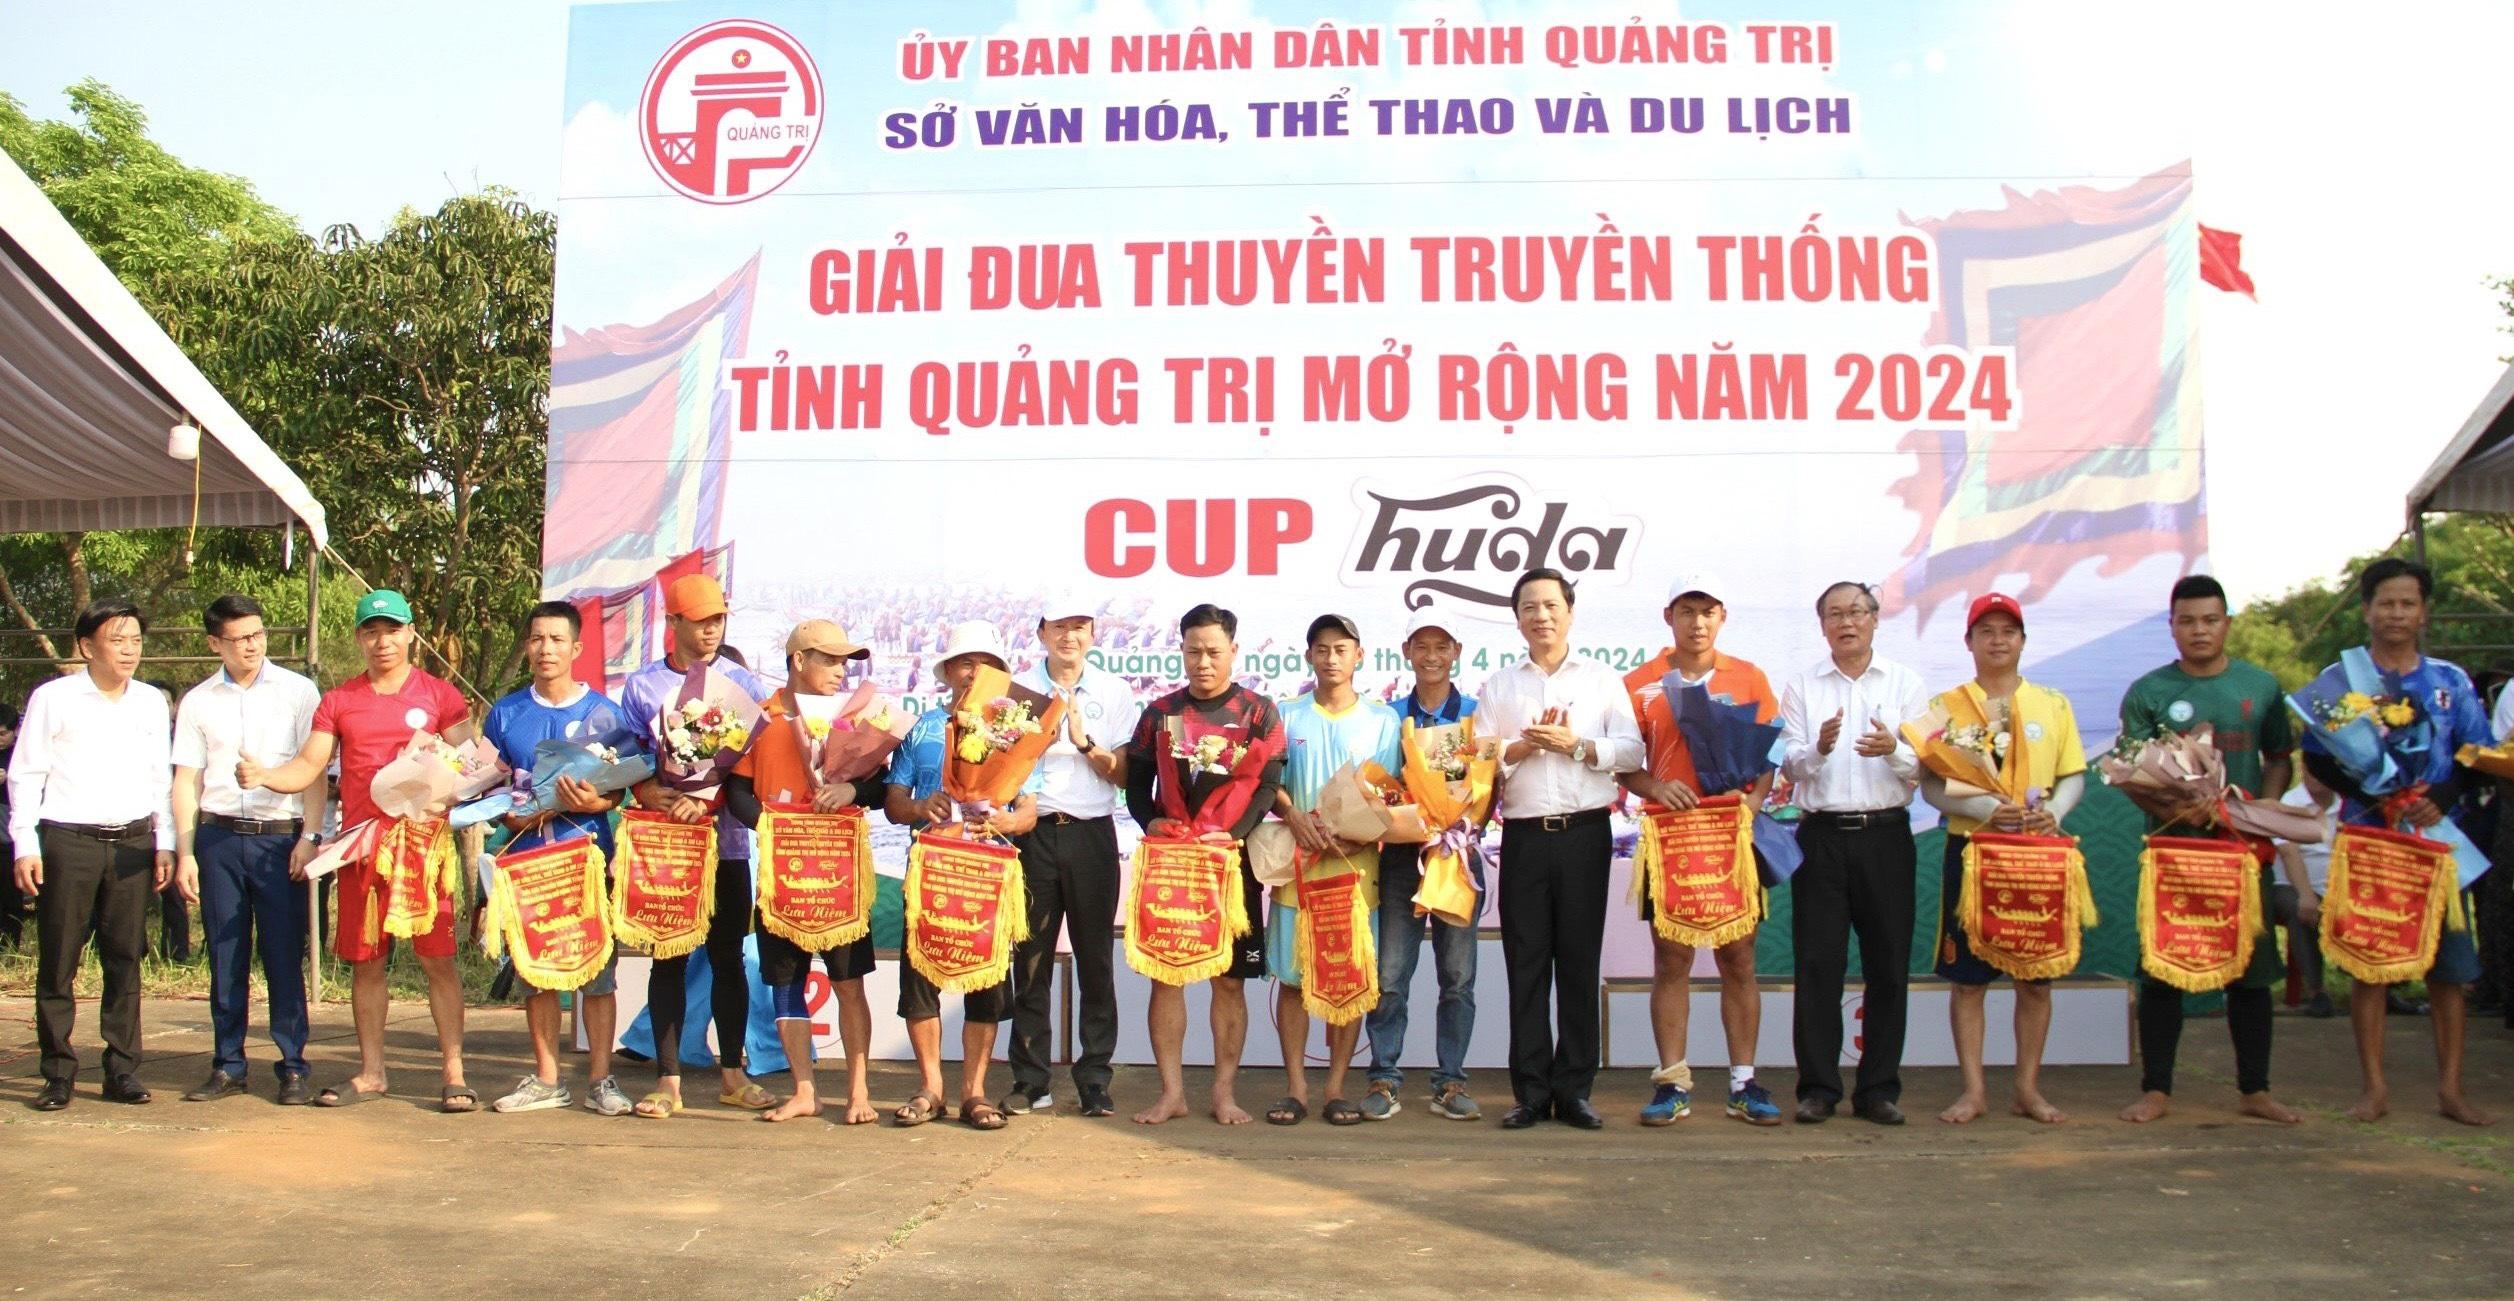 Triệu Phong đạt giải nhất toàn đoàn về giải đua thuyền truyền thống “Lễ hội Thống nhất non sông”...